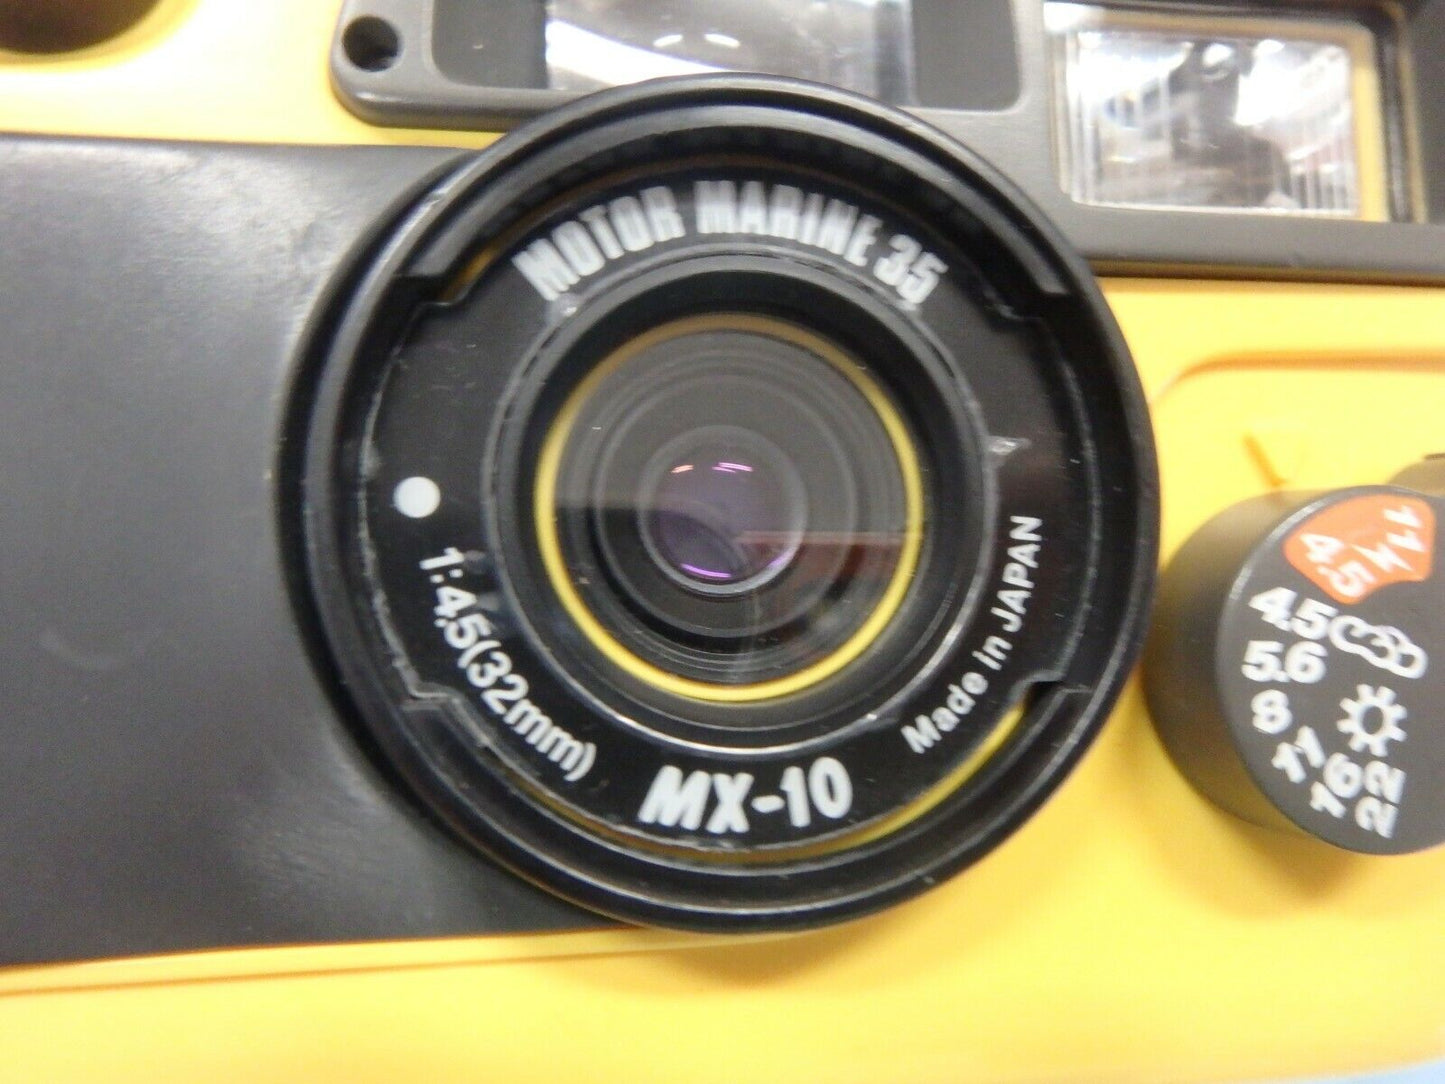 Sea & Sea Motor Marine 35, MX-10 / YA-40A Flash-wide angle & close-up lens kits